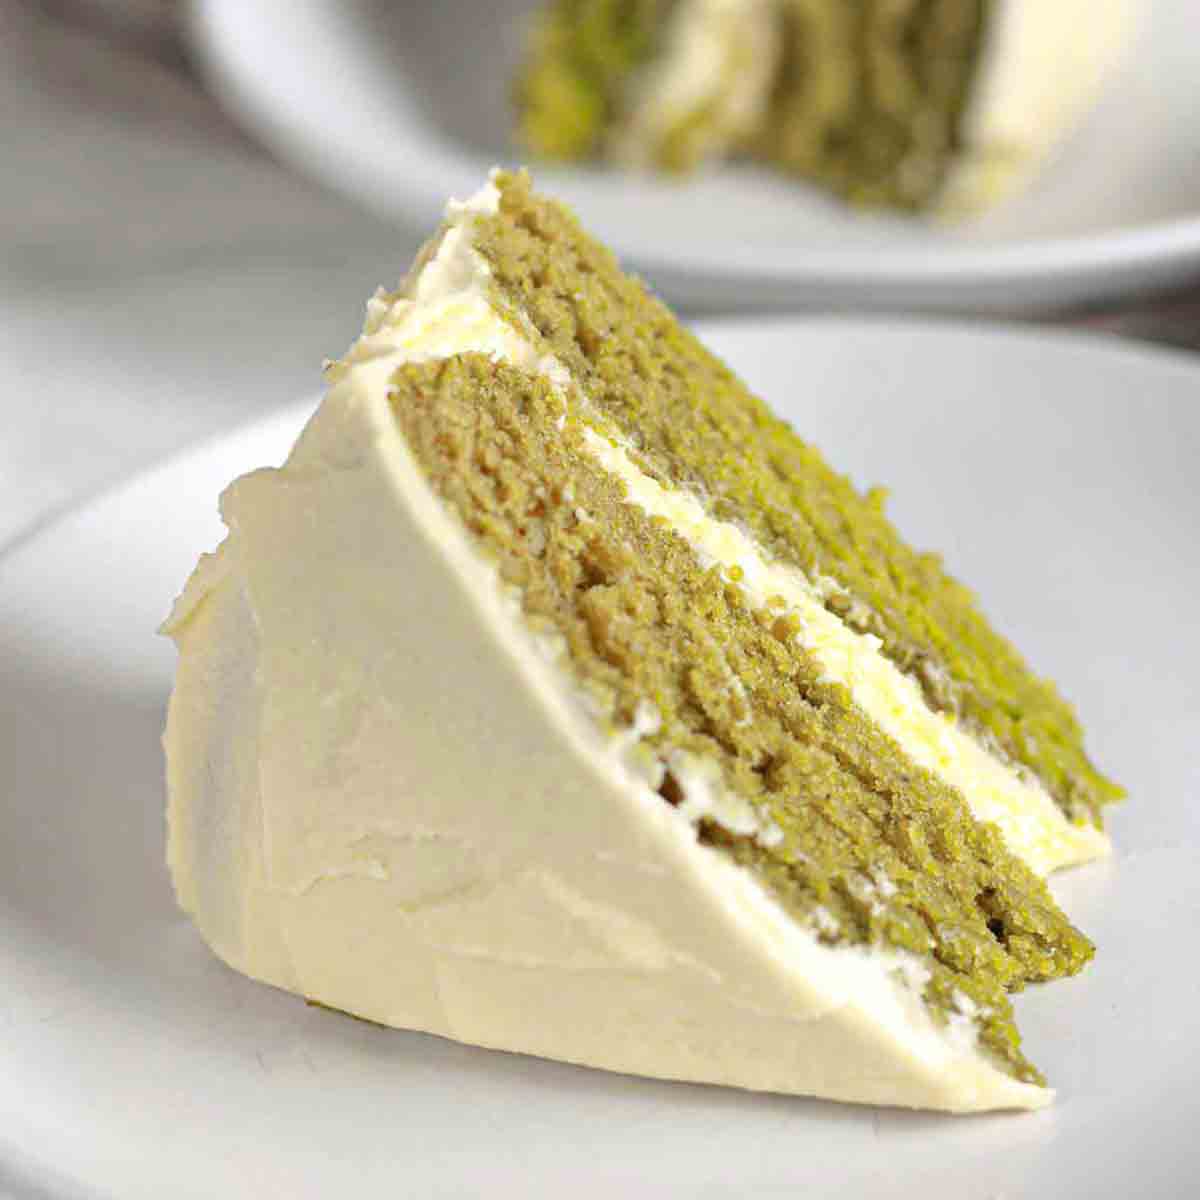 Matcha cake image for vegan Christmas cakes post